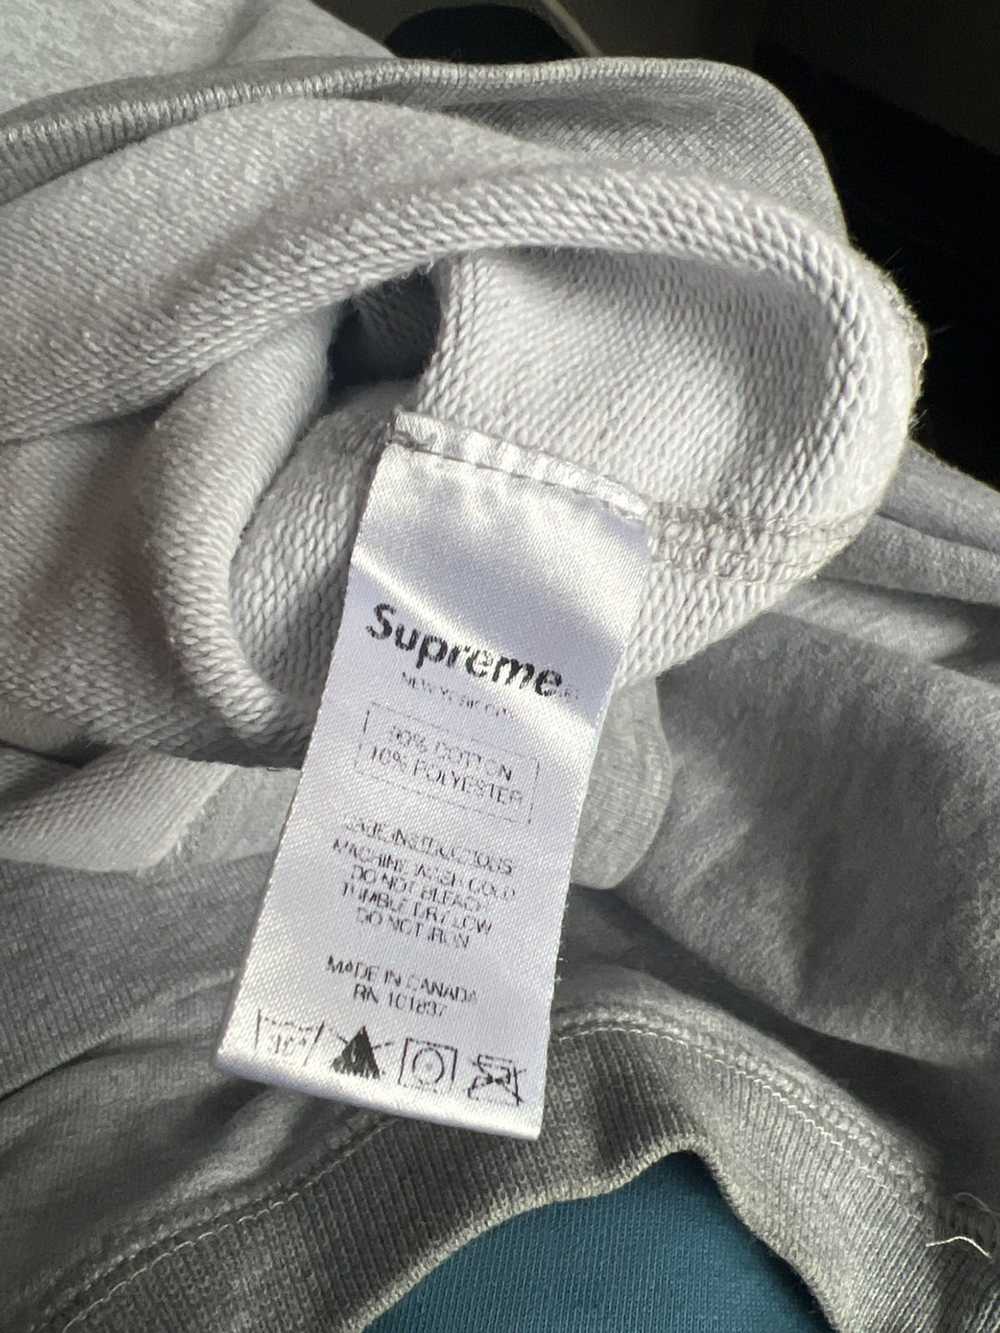 Supreme Supreme Menace II Society sweatshirt - image 5